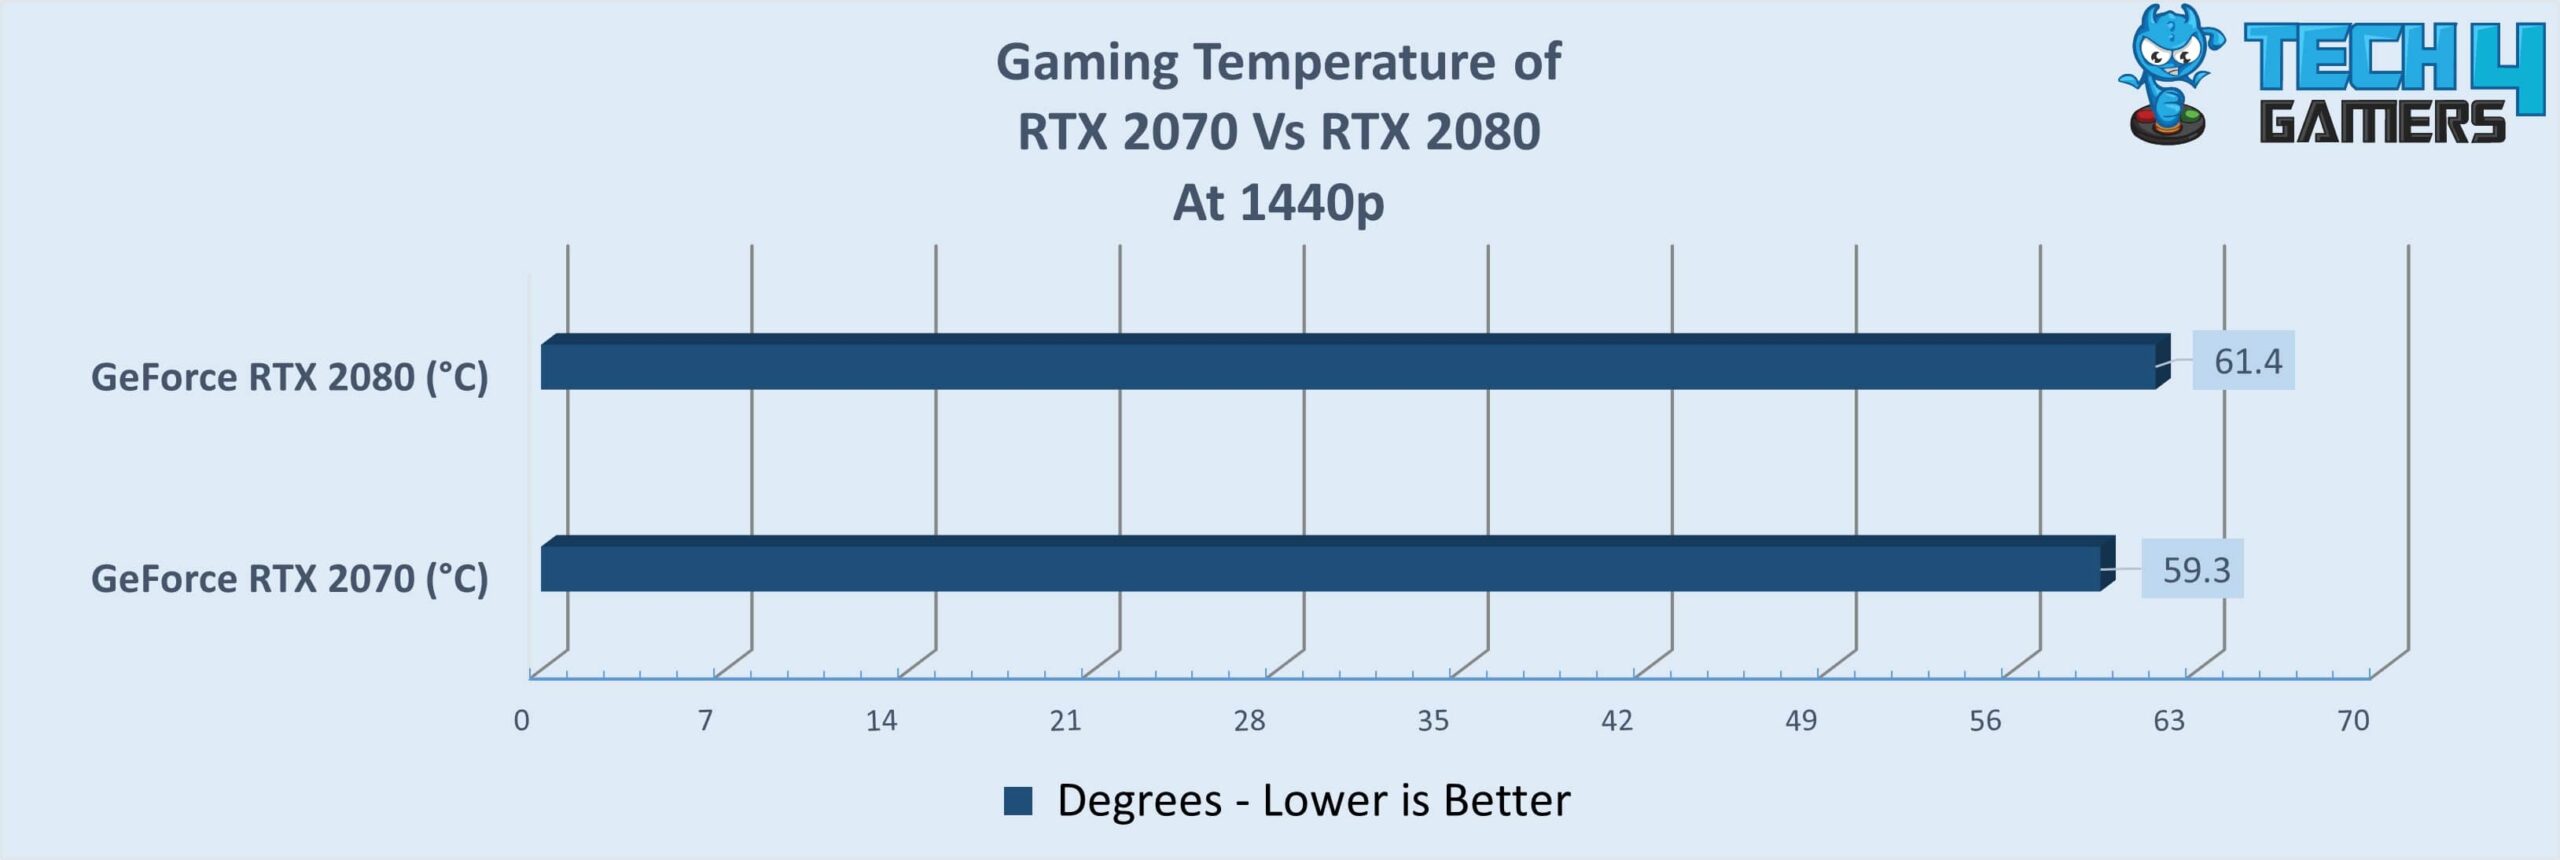 Gaming Temperature